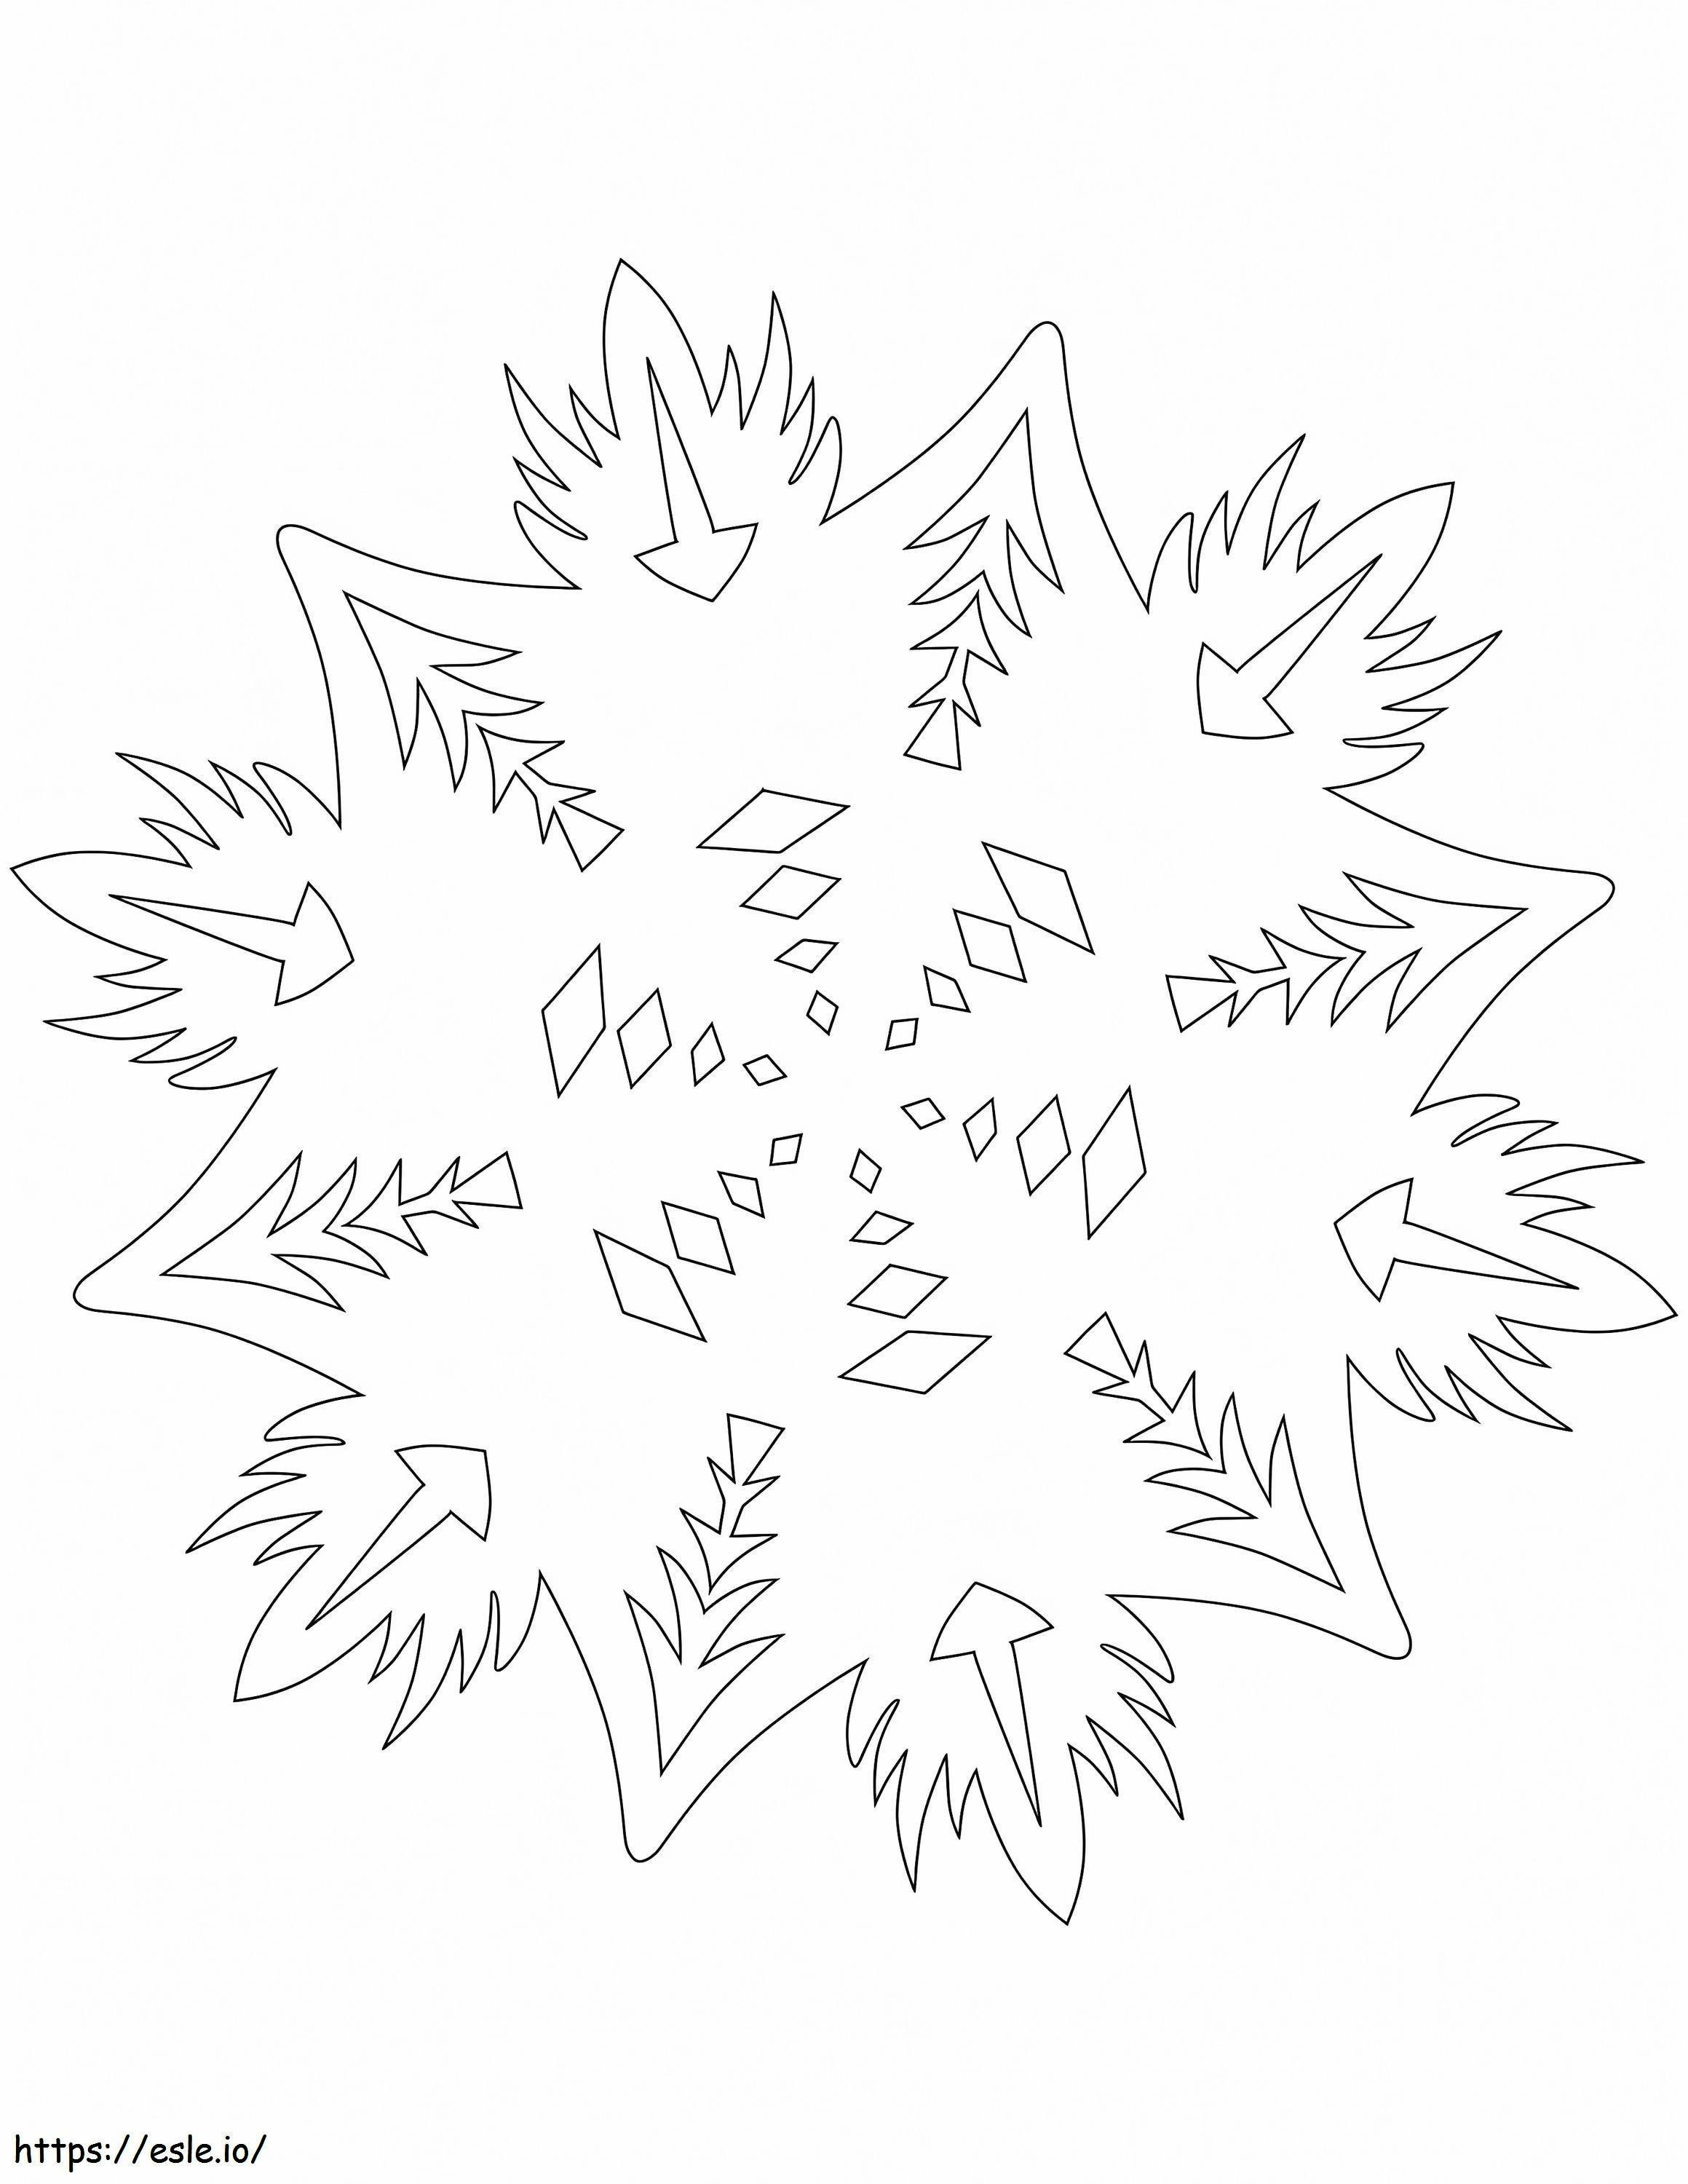 1584065319 Fiocco di neve con motivo astratto da colorare